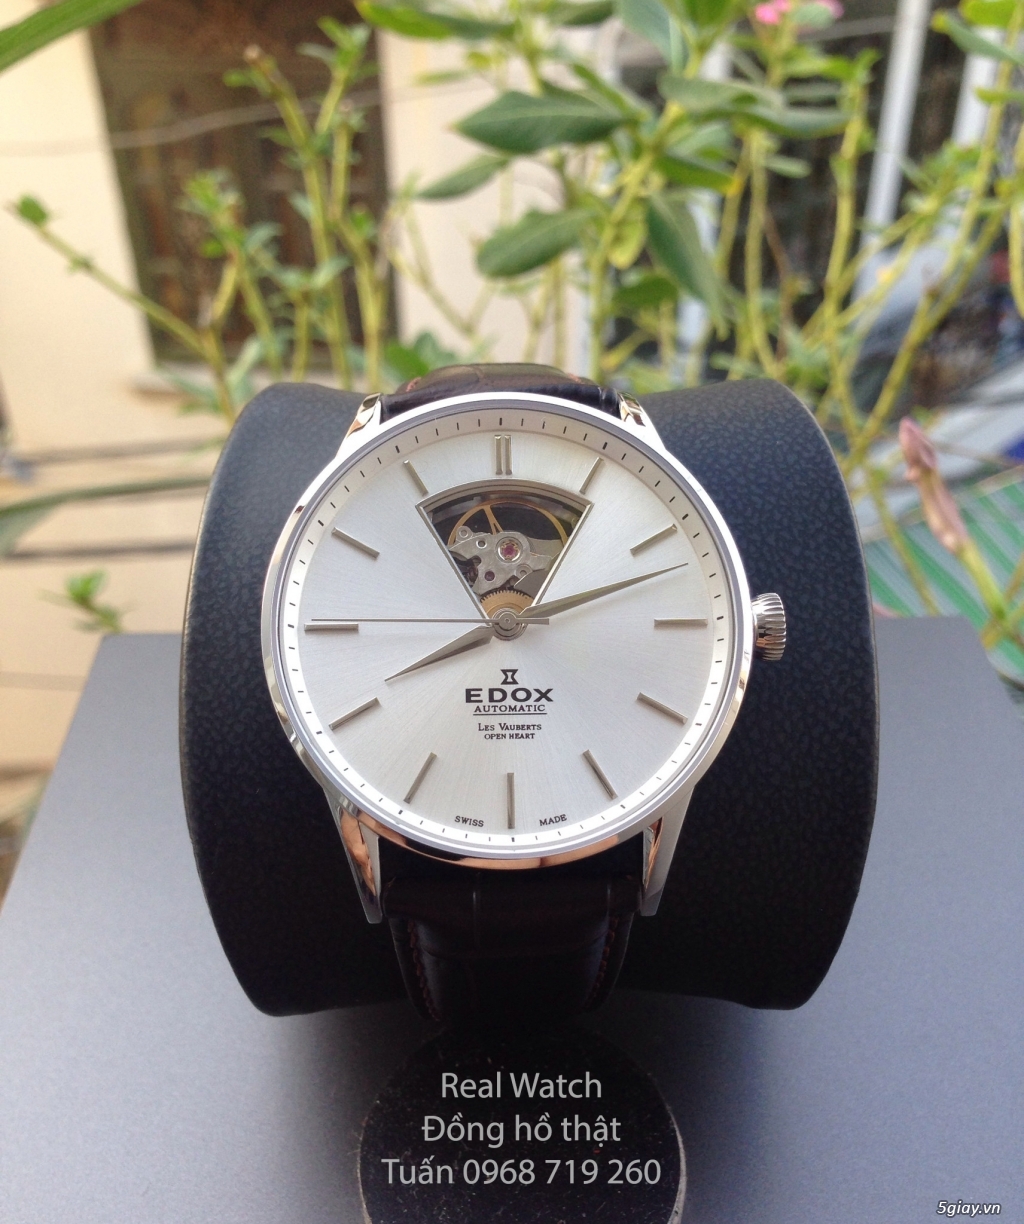 Đồng hồ  THỤY SĨ chính hãng Edox AUTOMATIC -ĐỒNG HỒ THẬT CHÍNH HÃNG - 4